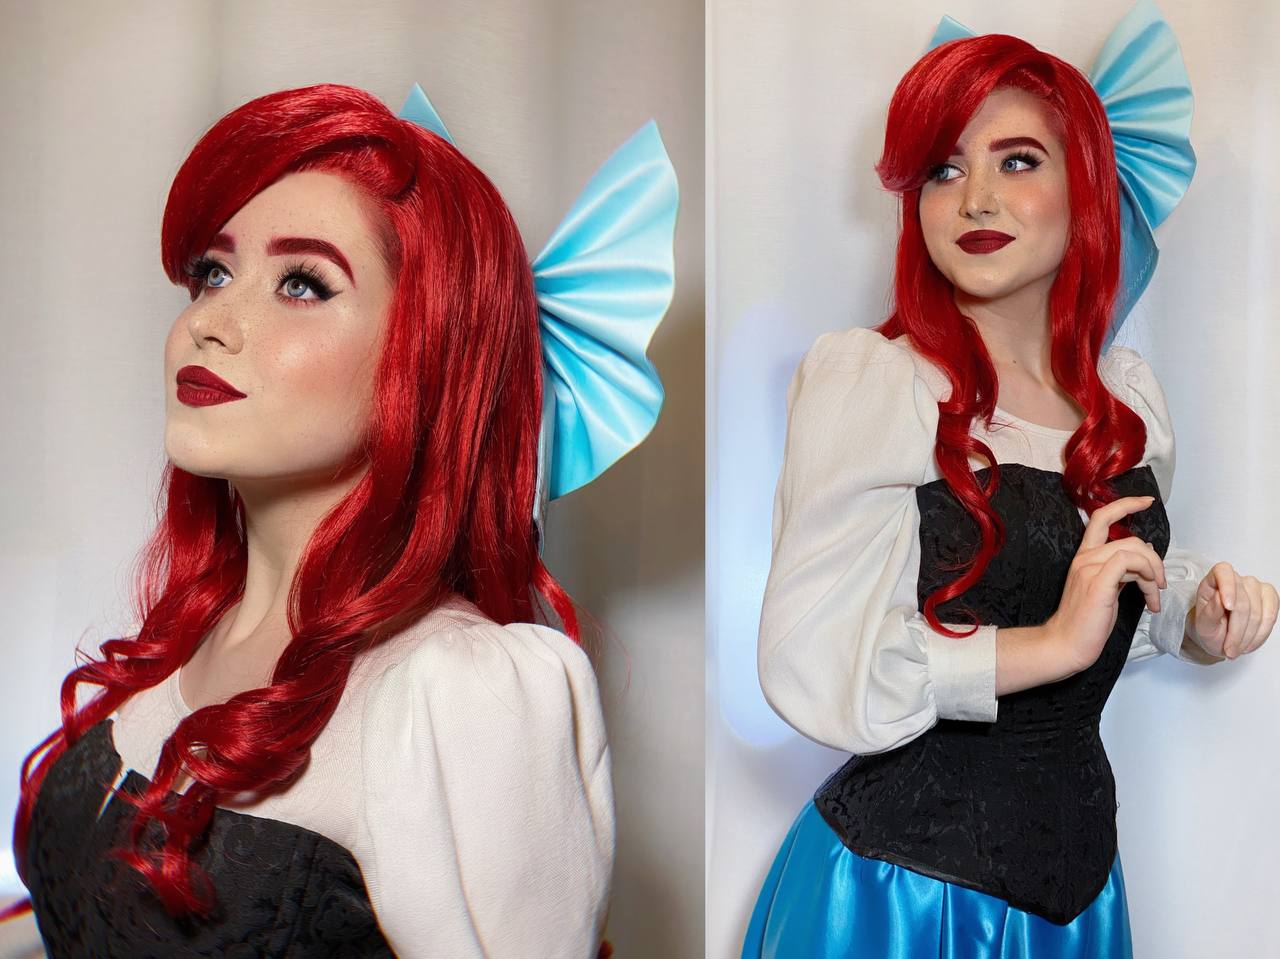 Ariel From The Little Mermaid By Marisochek Costume By Le Atlas